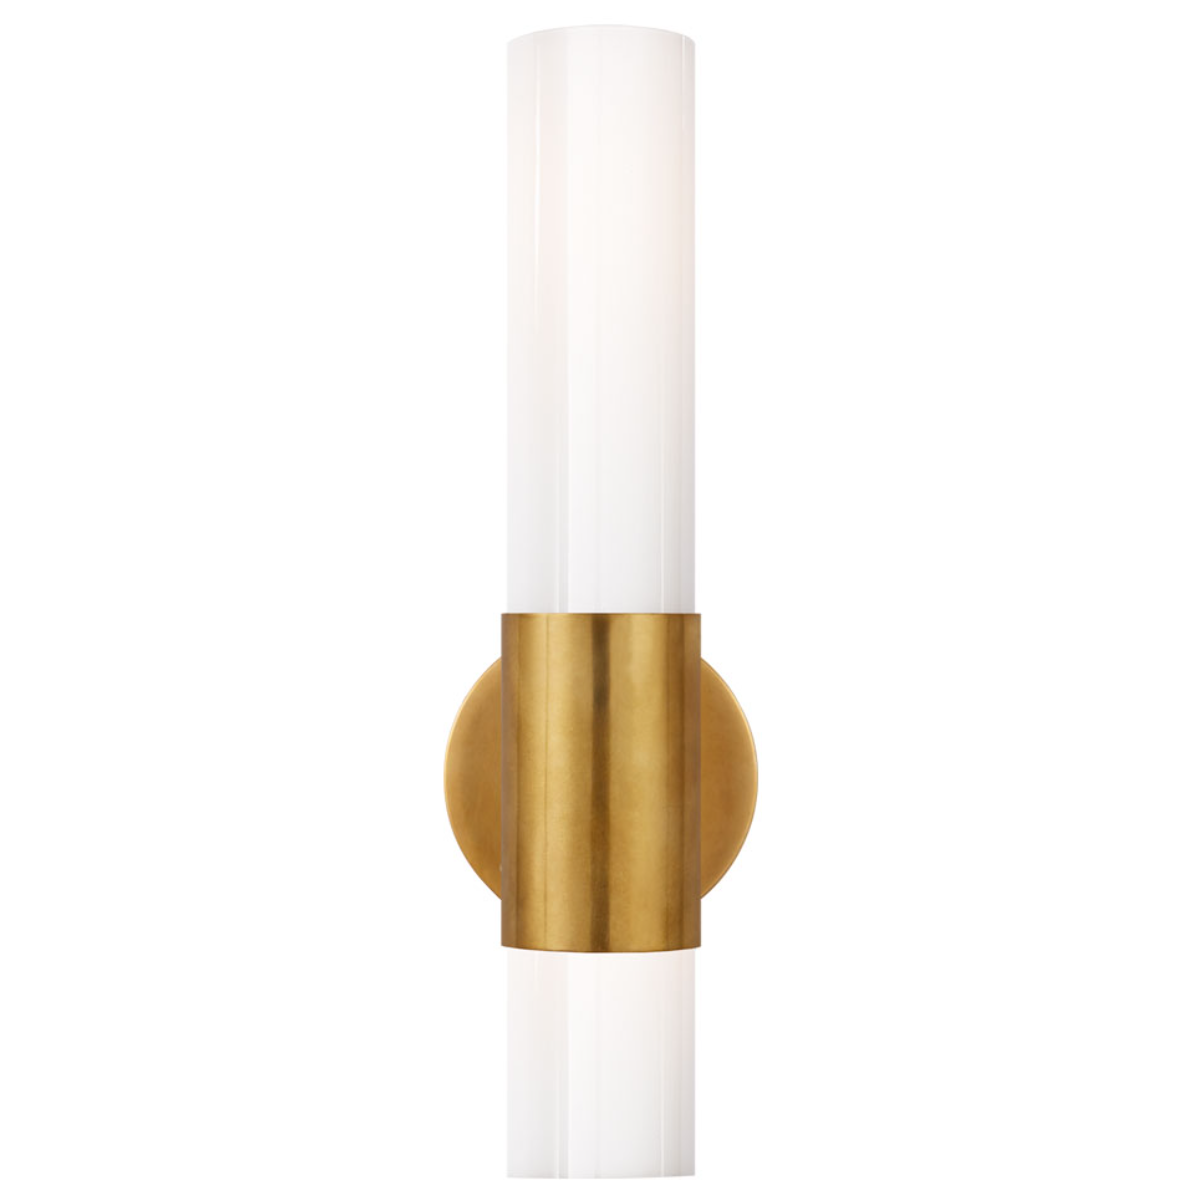 AERIN | Penz Cylindrical Wall Light | Antique Brass